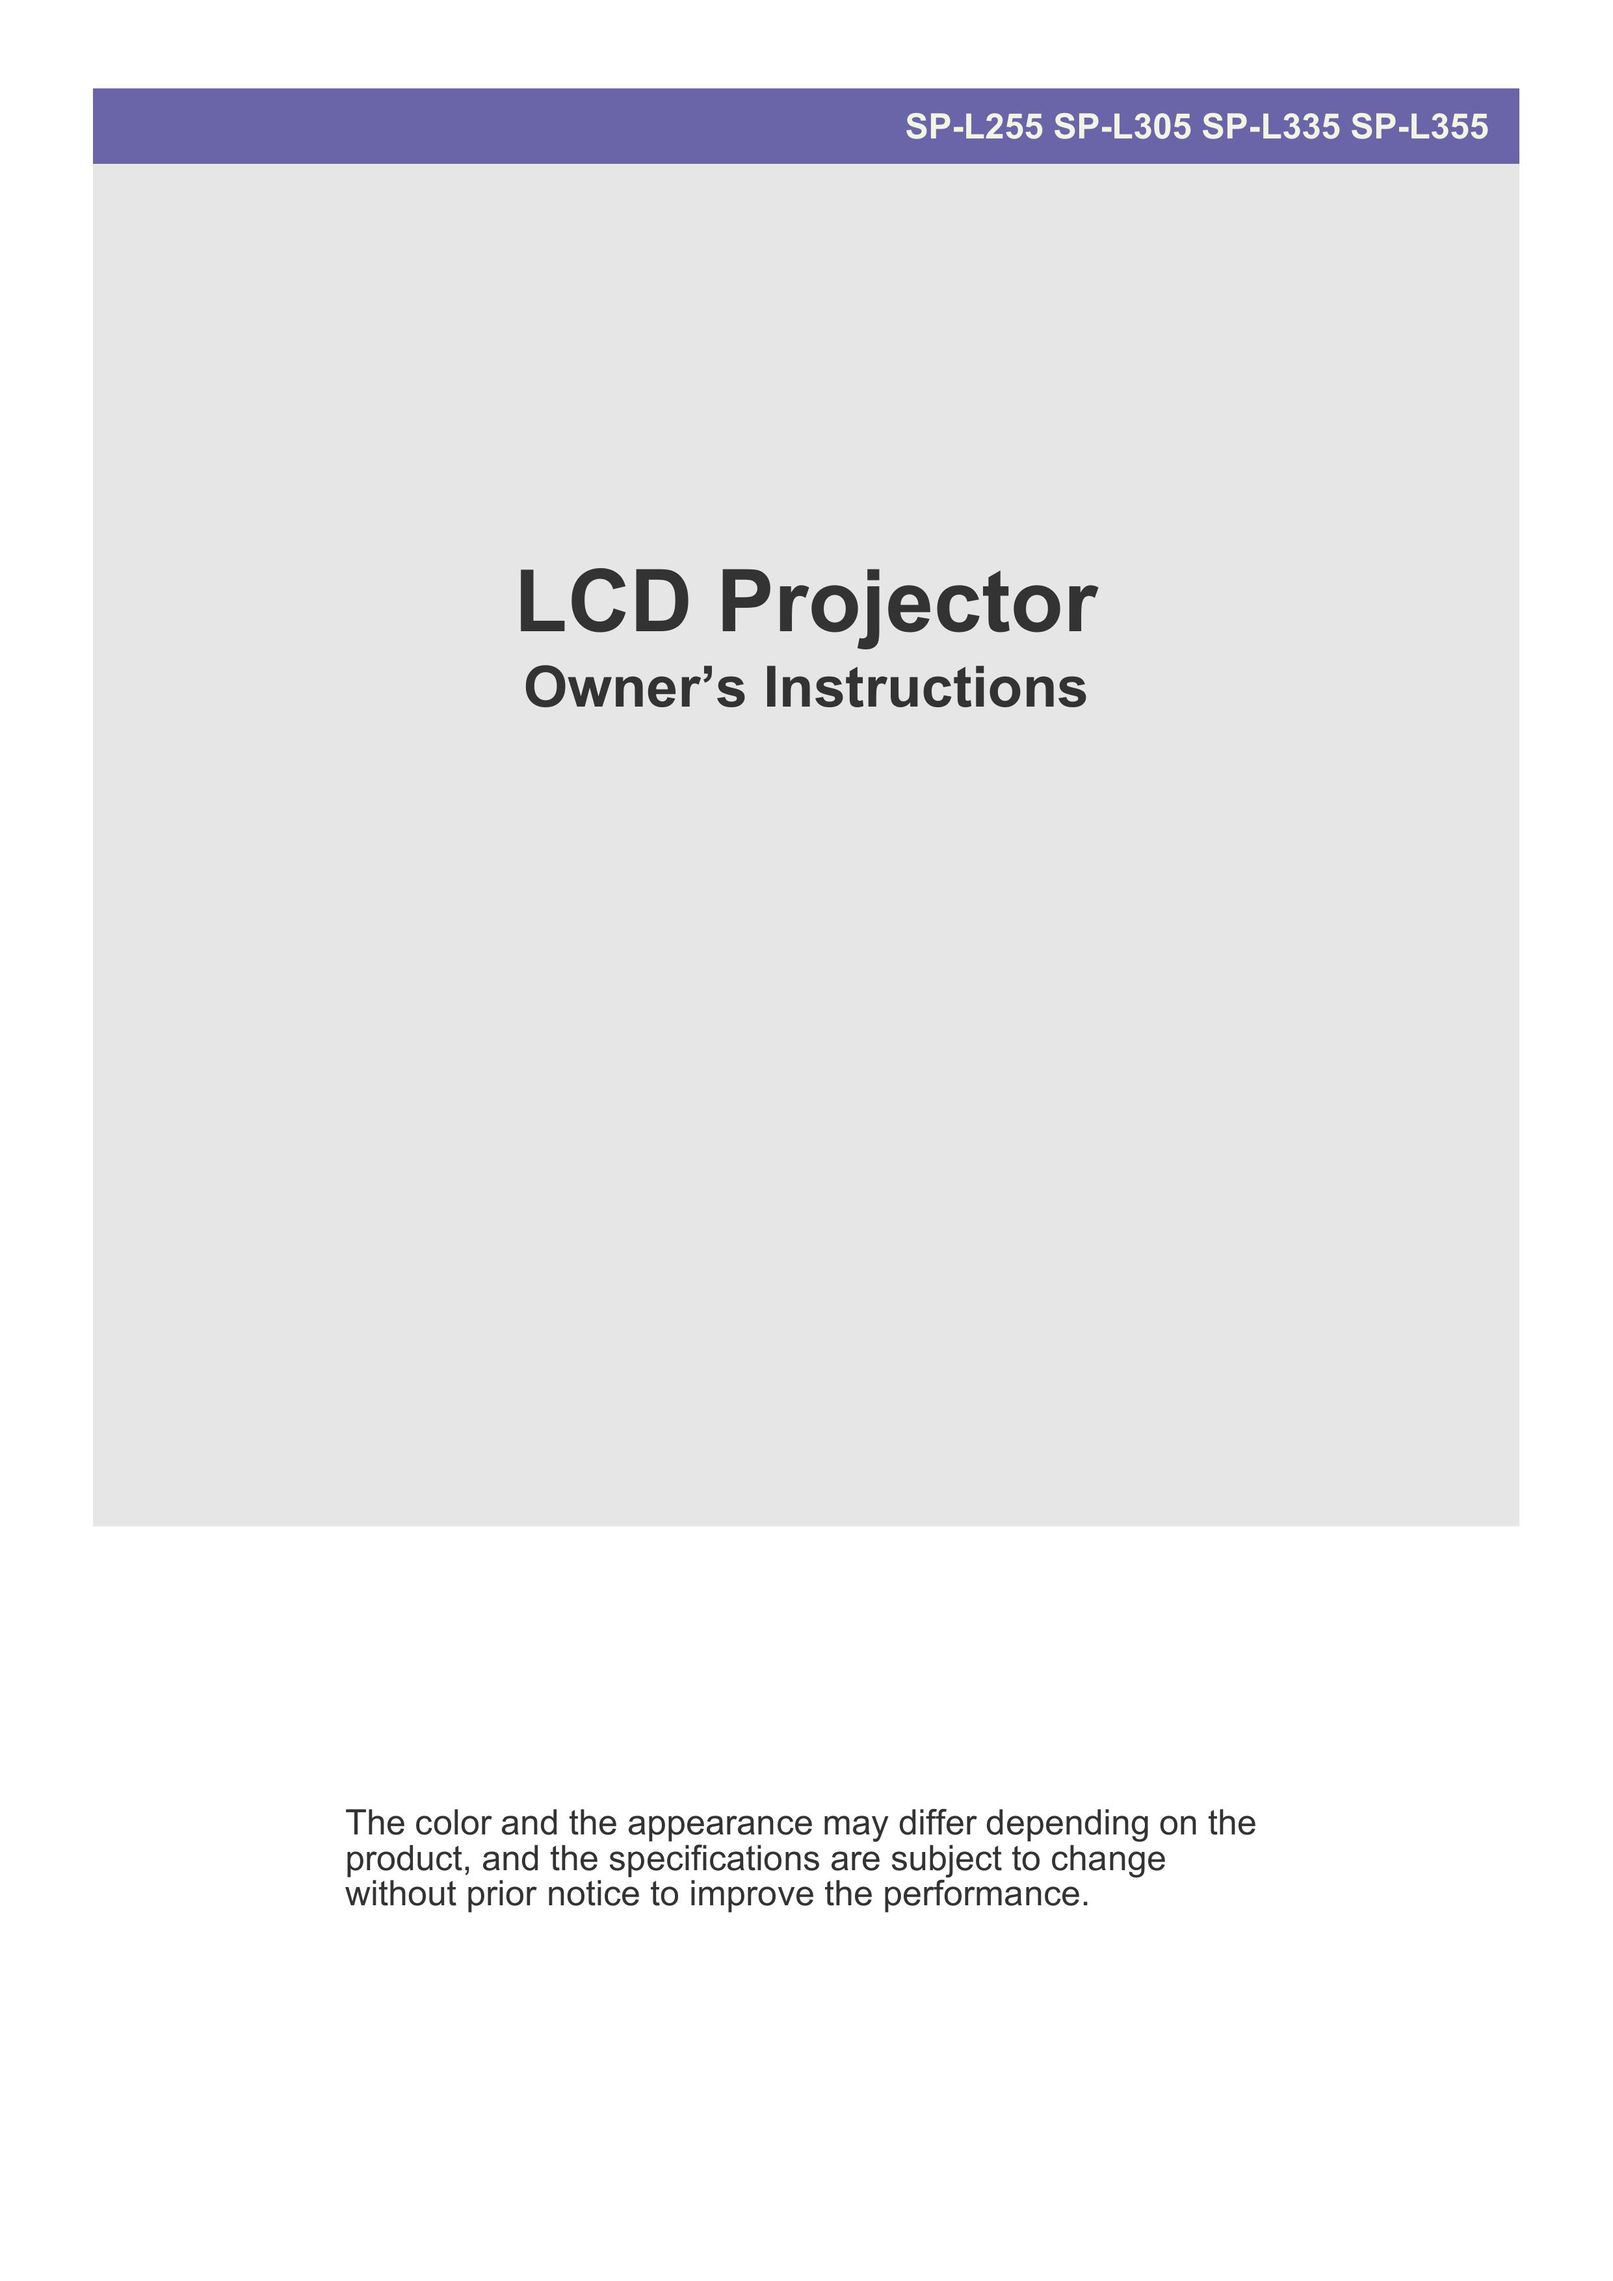 Samsung SP-L305 Projector User Manual